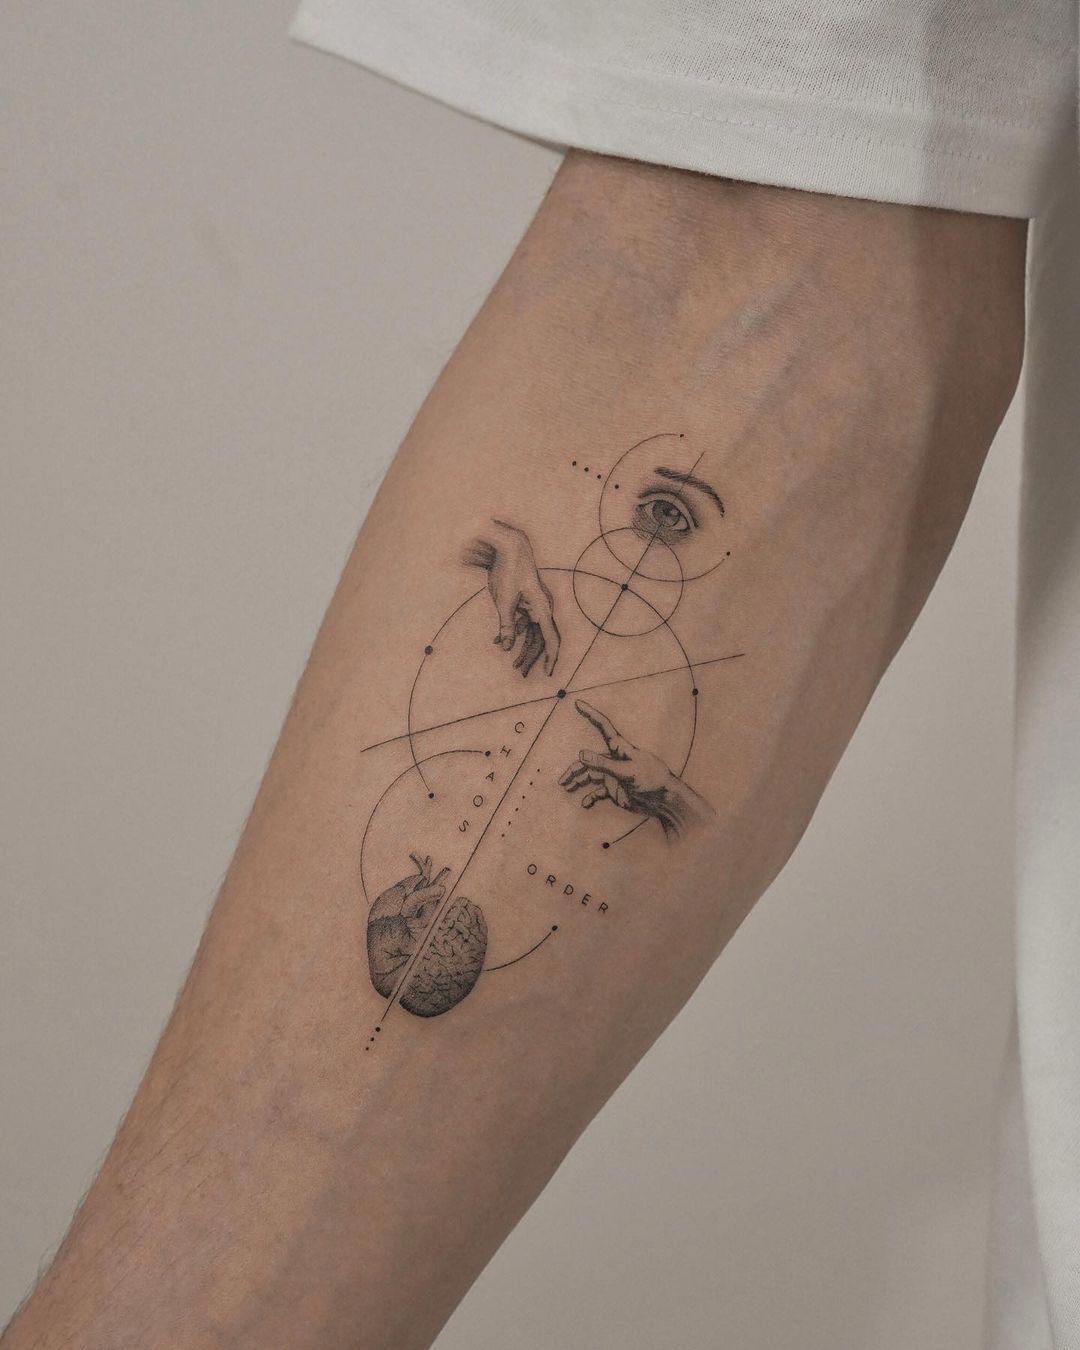 Un tattoo puramente simbólico con motivos realistas